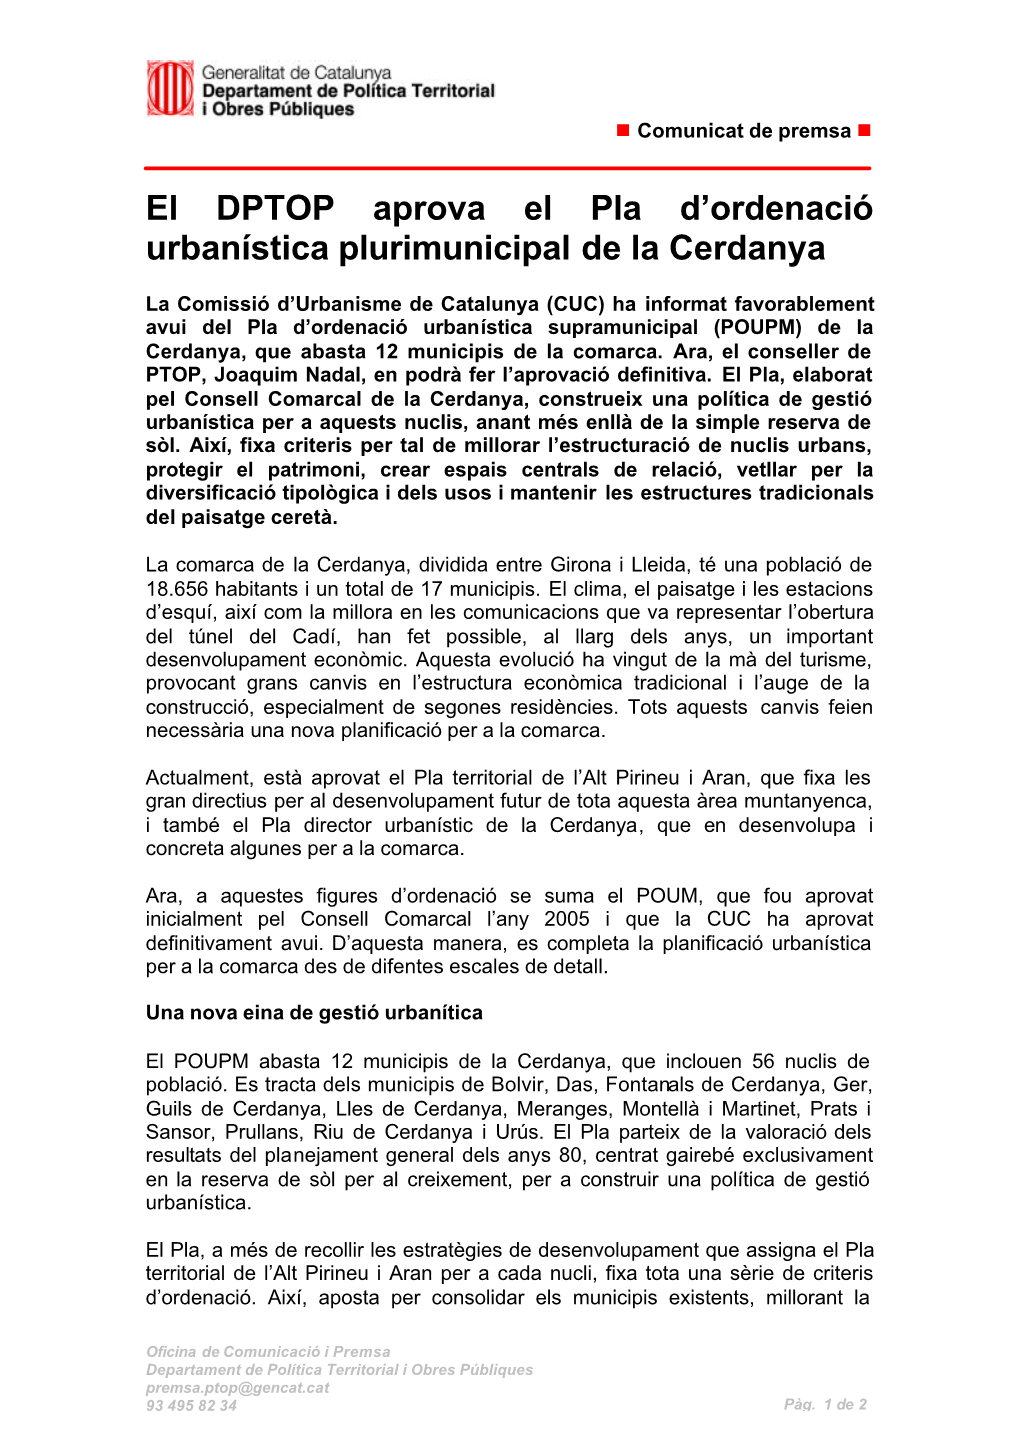 El DPTOP Aprova El Pla D'ordenació Urbanística Plurimunicipal De La Cerdanya